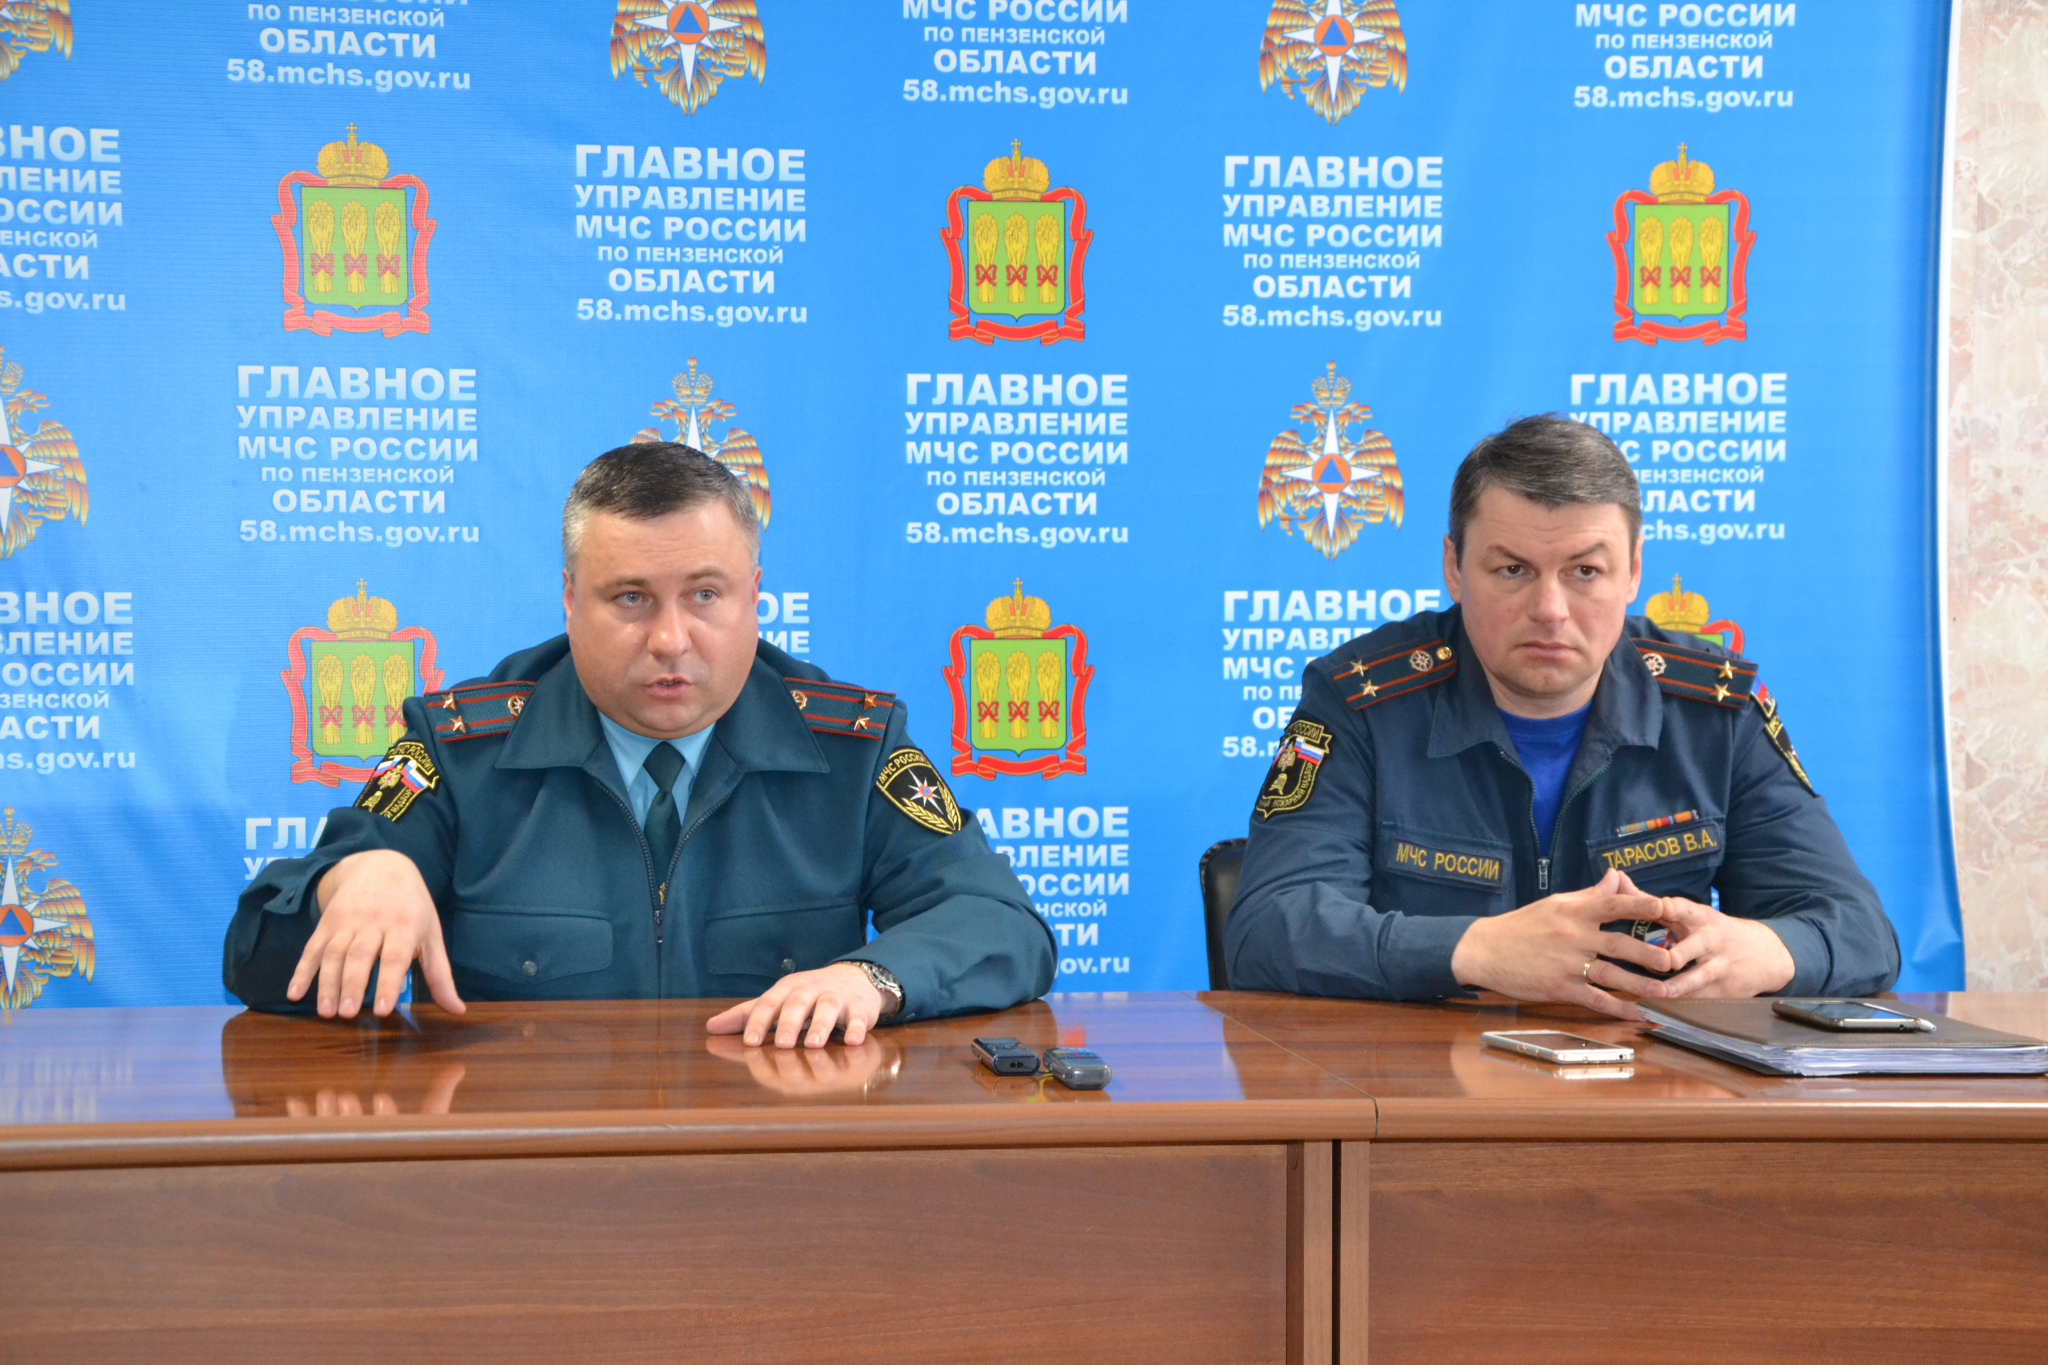 Проверки ТЦ, ситуация в Кемерове, проблемы пожбезопасности: мысли с брифинга МЧС